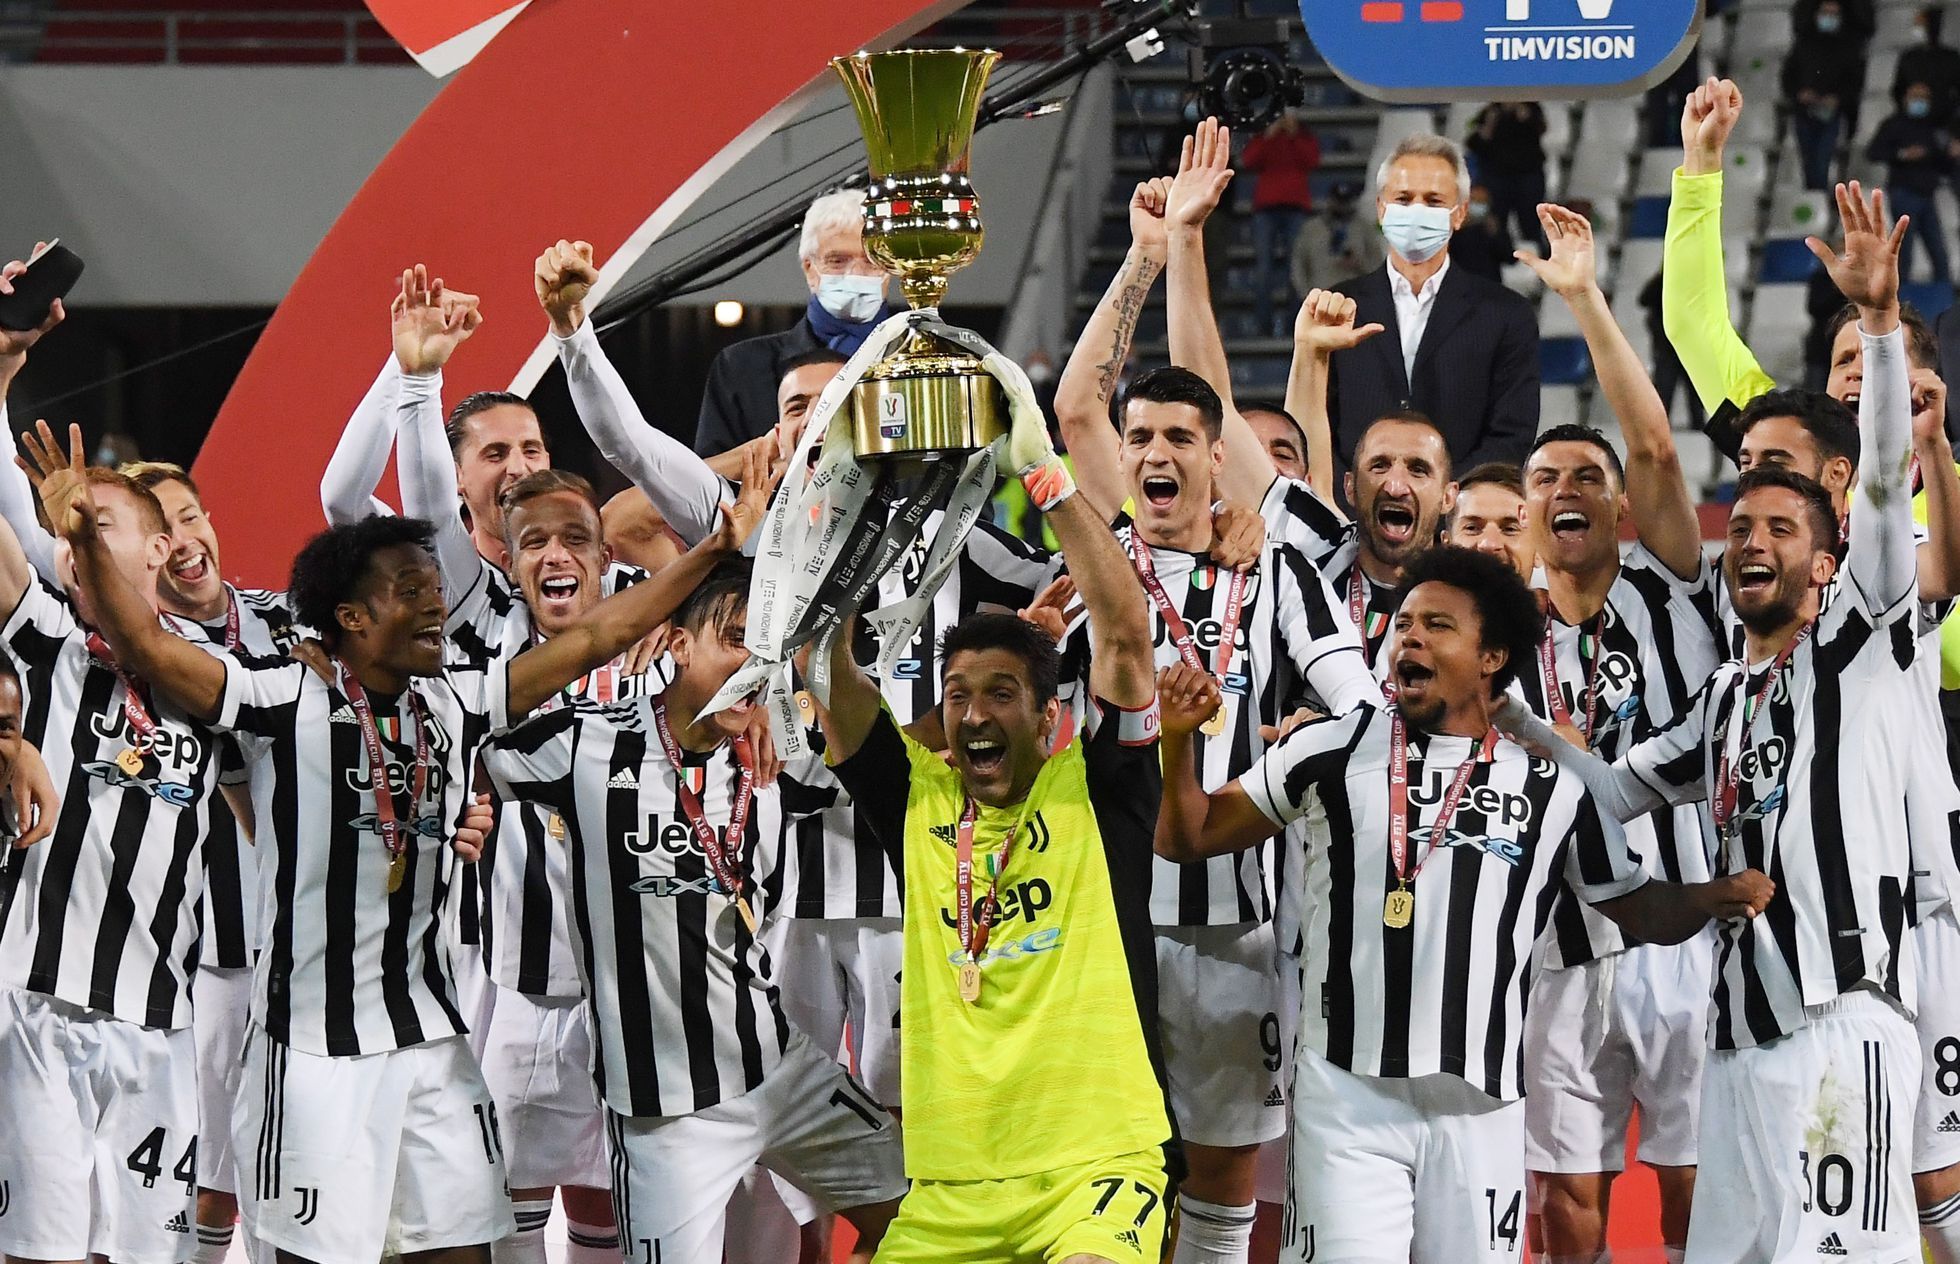 La plantilla al completo del Juventus Football Club celebrando su victoria.